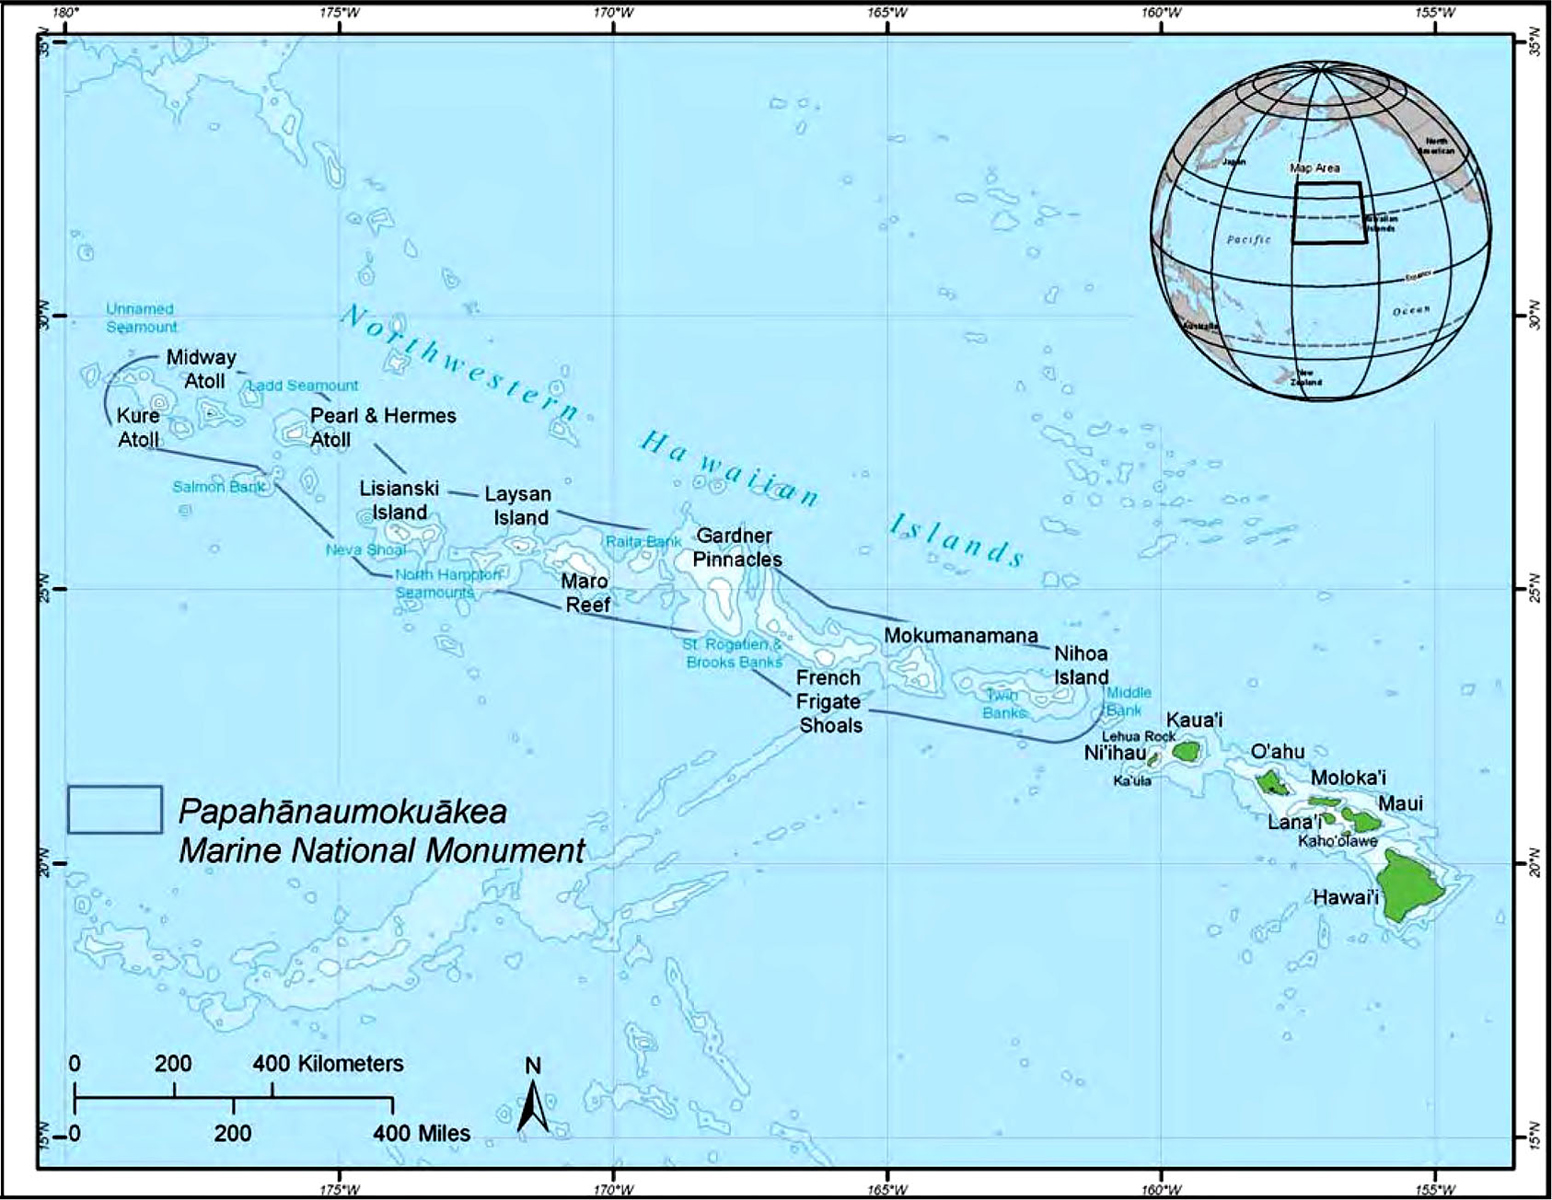 [Hawaiian archipelago with the Northwestern Hawaiian Islands] Image courtesy of NOAA.